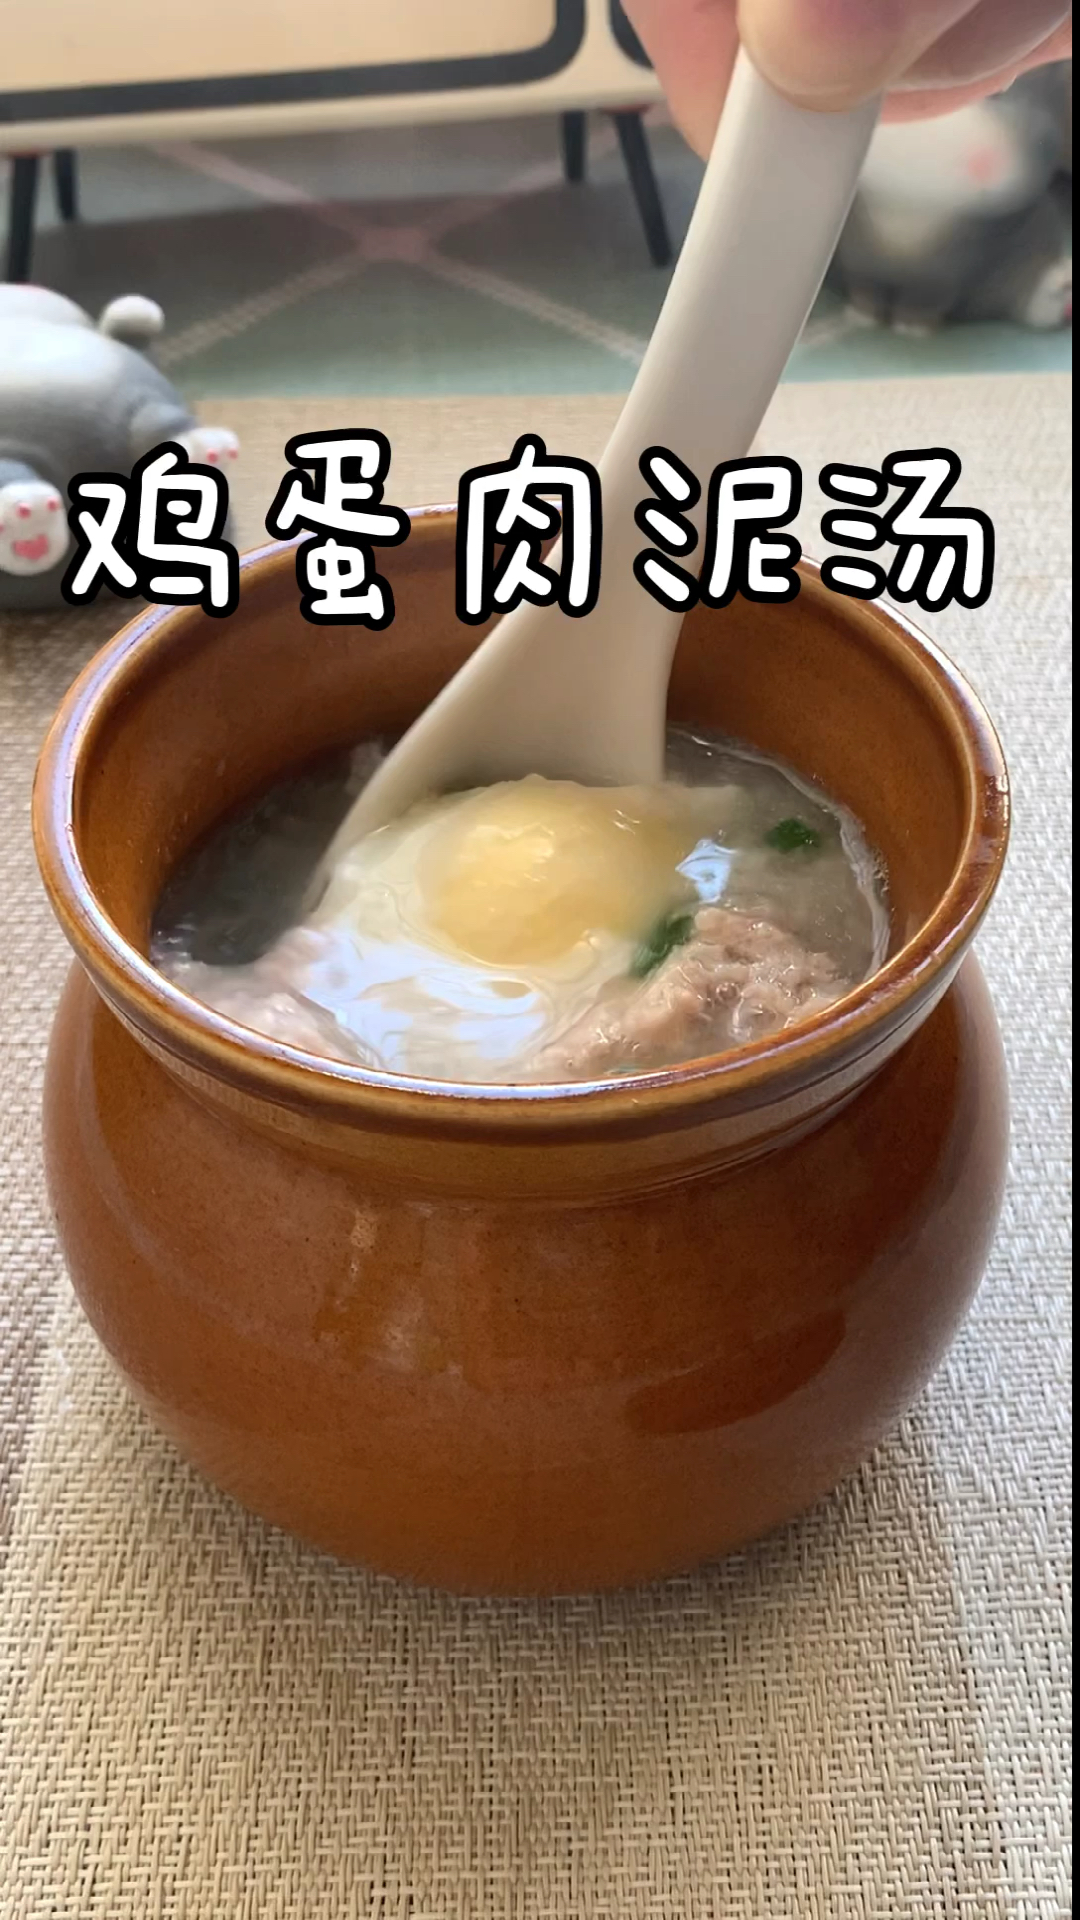 鸡蛋肉泥炖罐图片